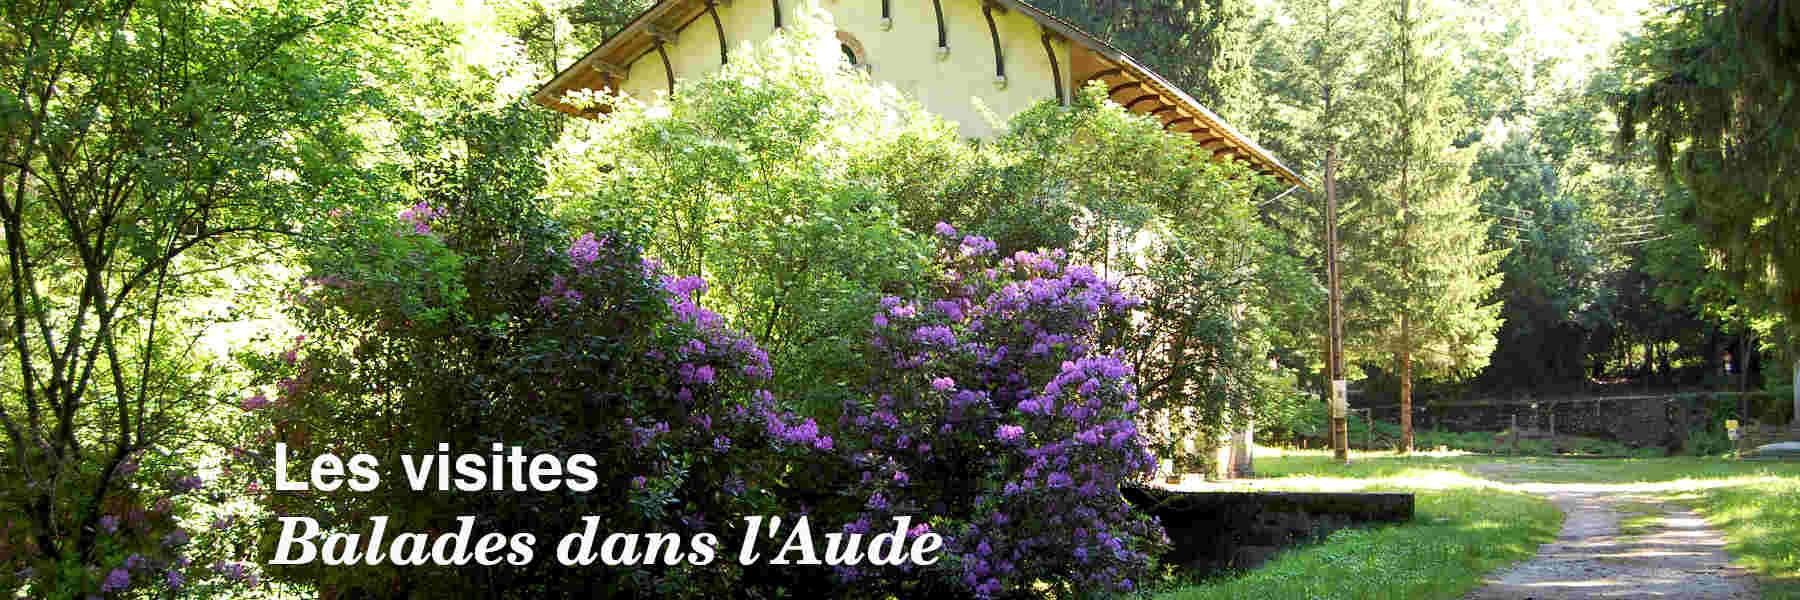 Les visites dans l'Aude